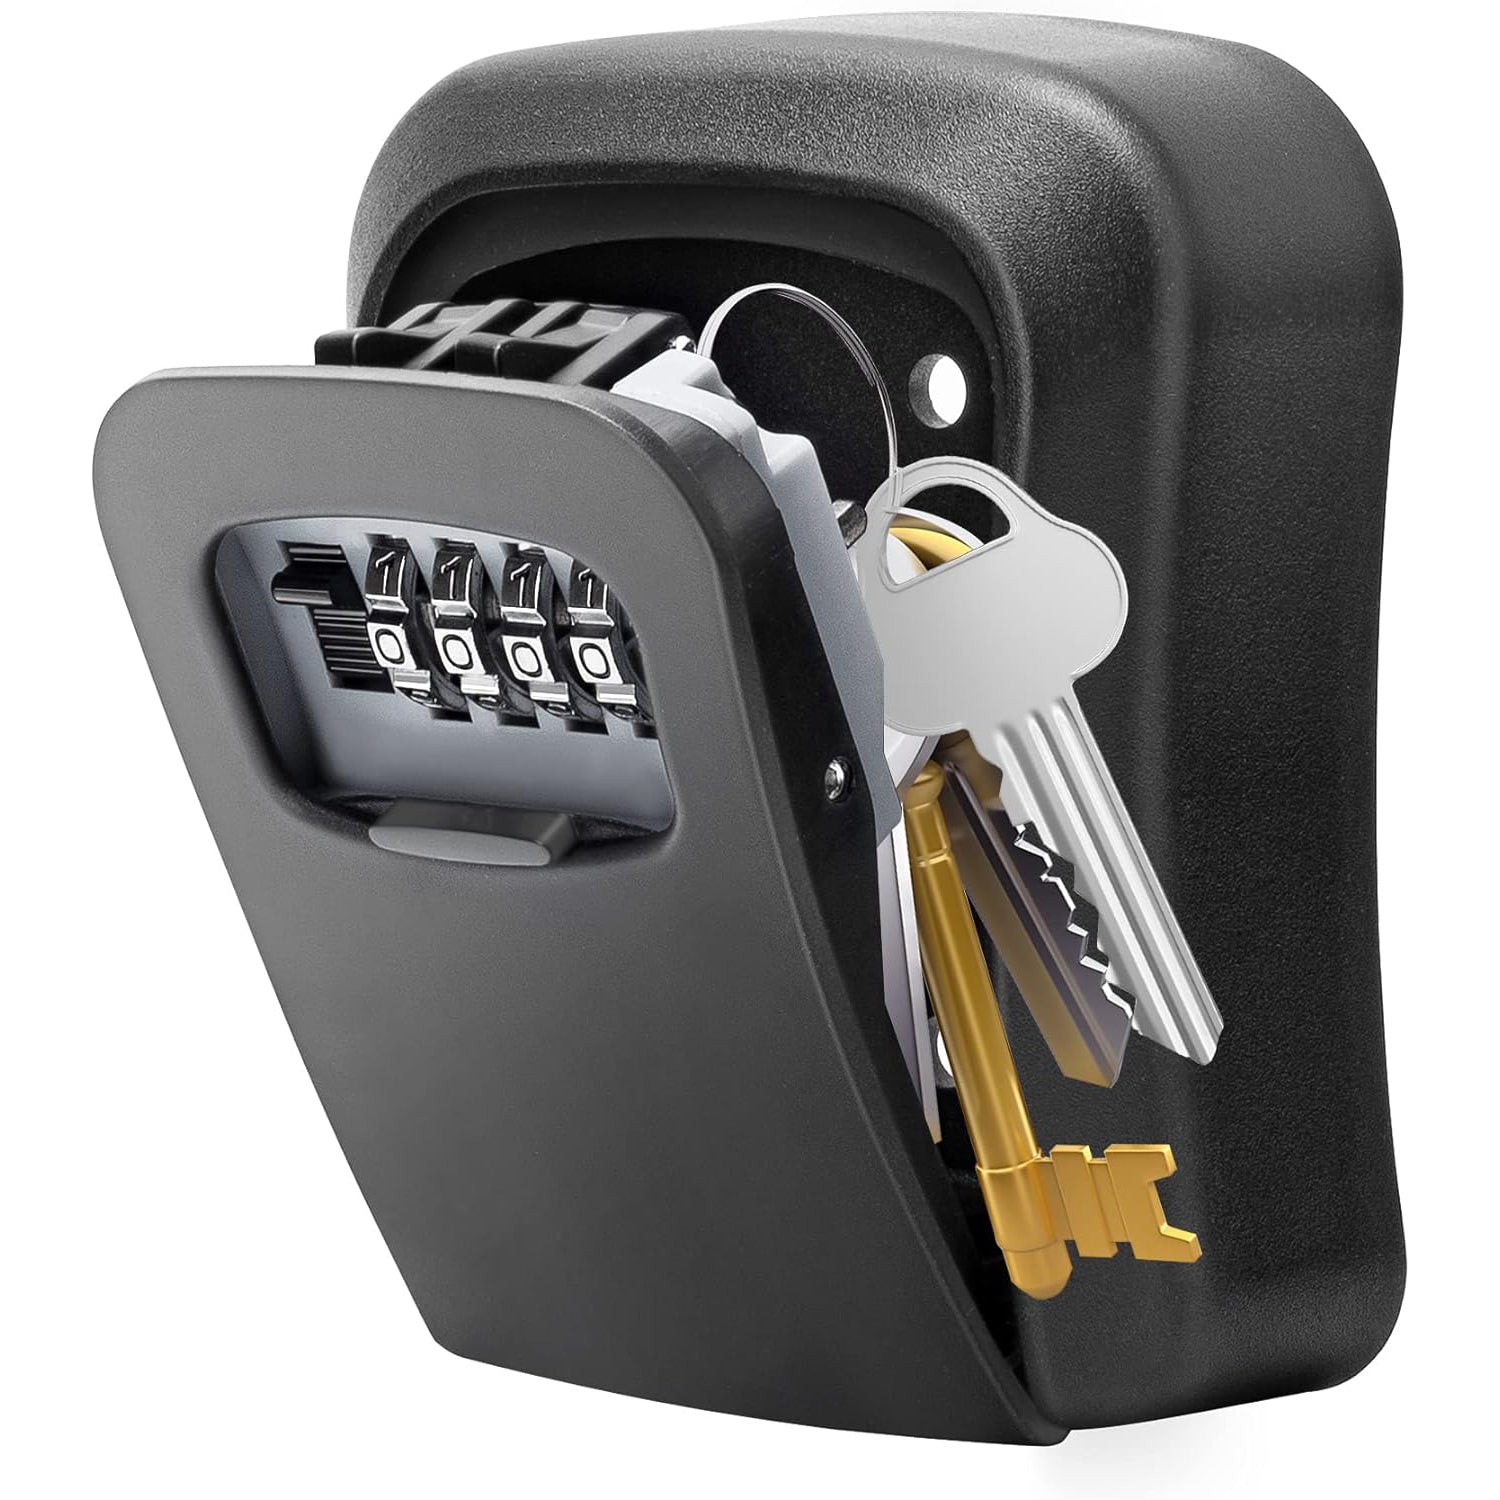 صندوق قفل للمفاتيح خزنة معدنية للمفاتيح بقفل من 4 ارقام للاستخدام في الاماكن الخارجية يثبت على الحائط لمفاتيح المنزل - معدن بالكامل [اسود]